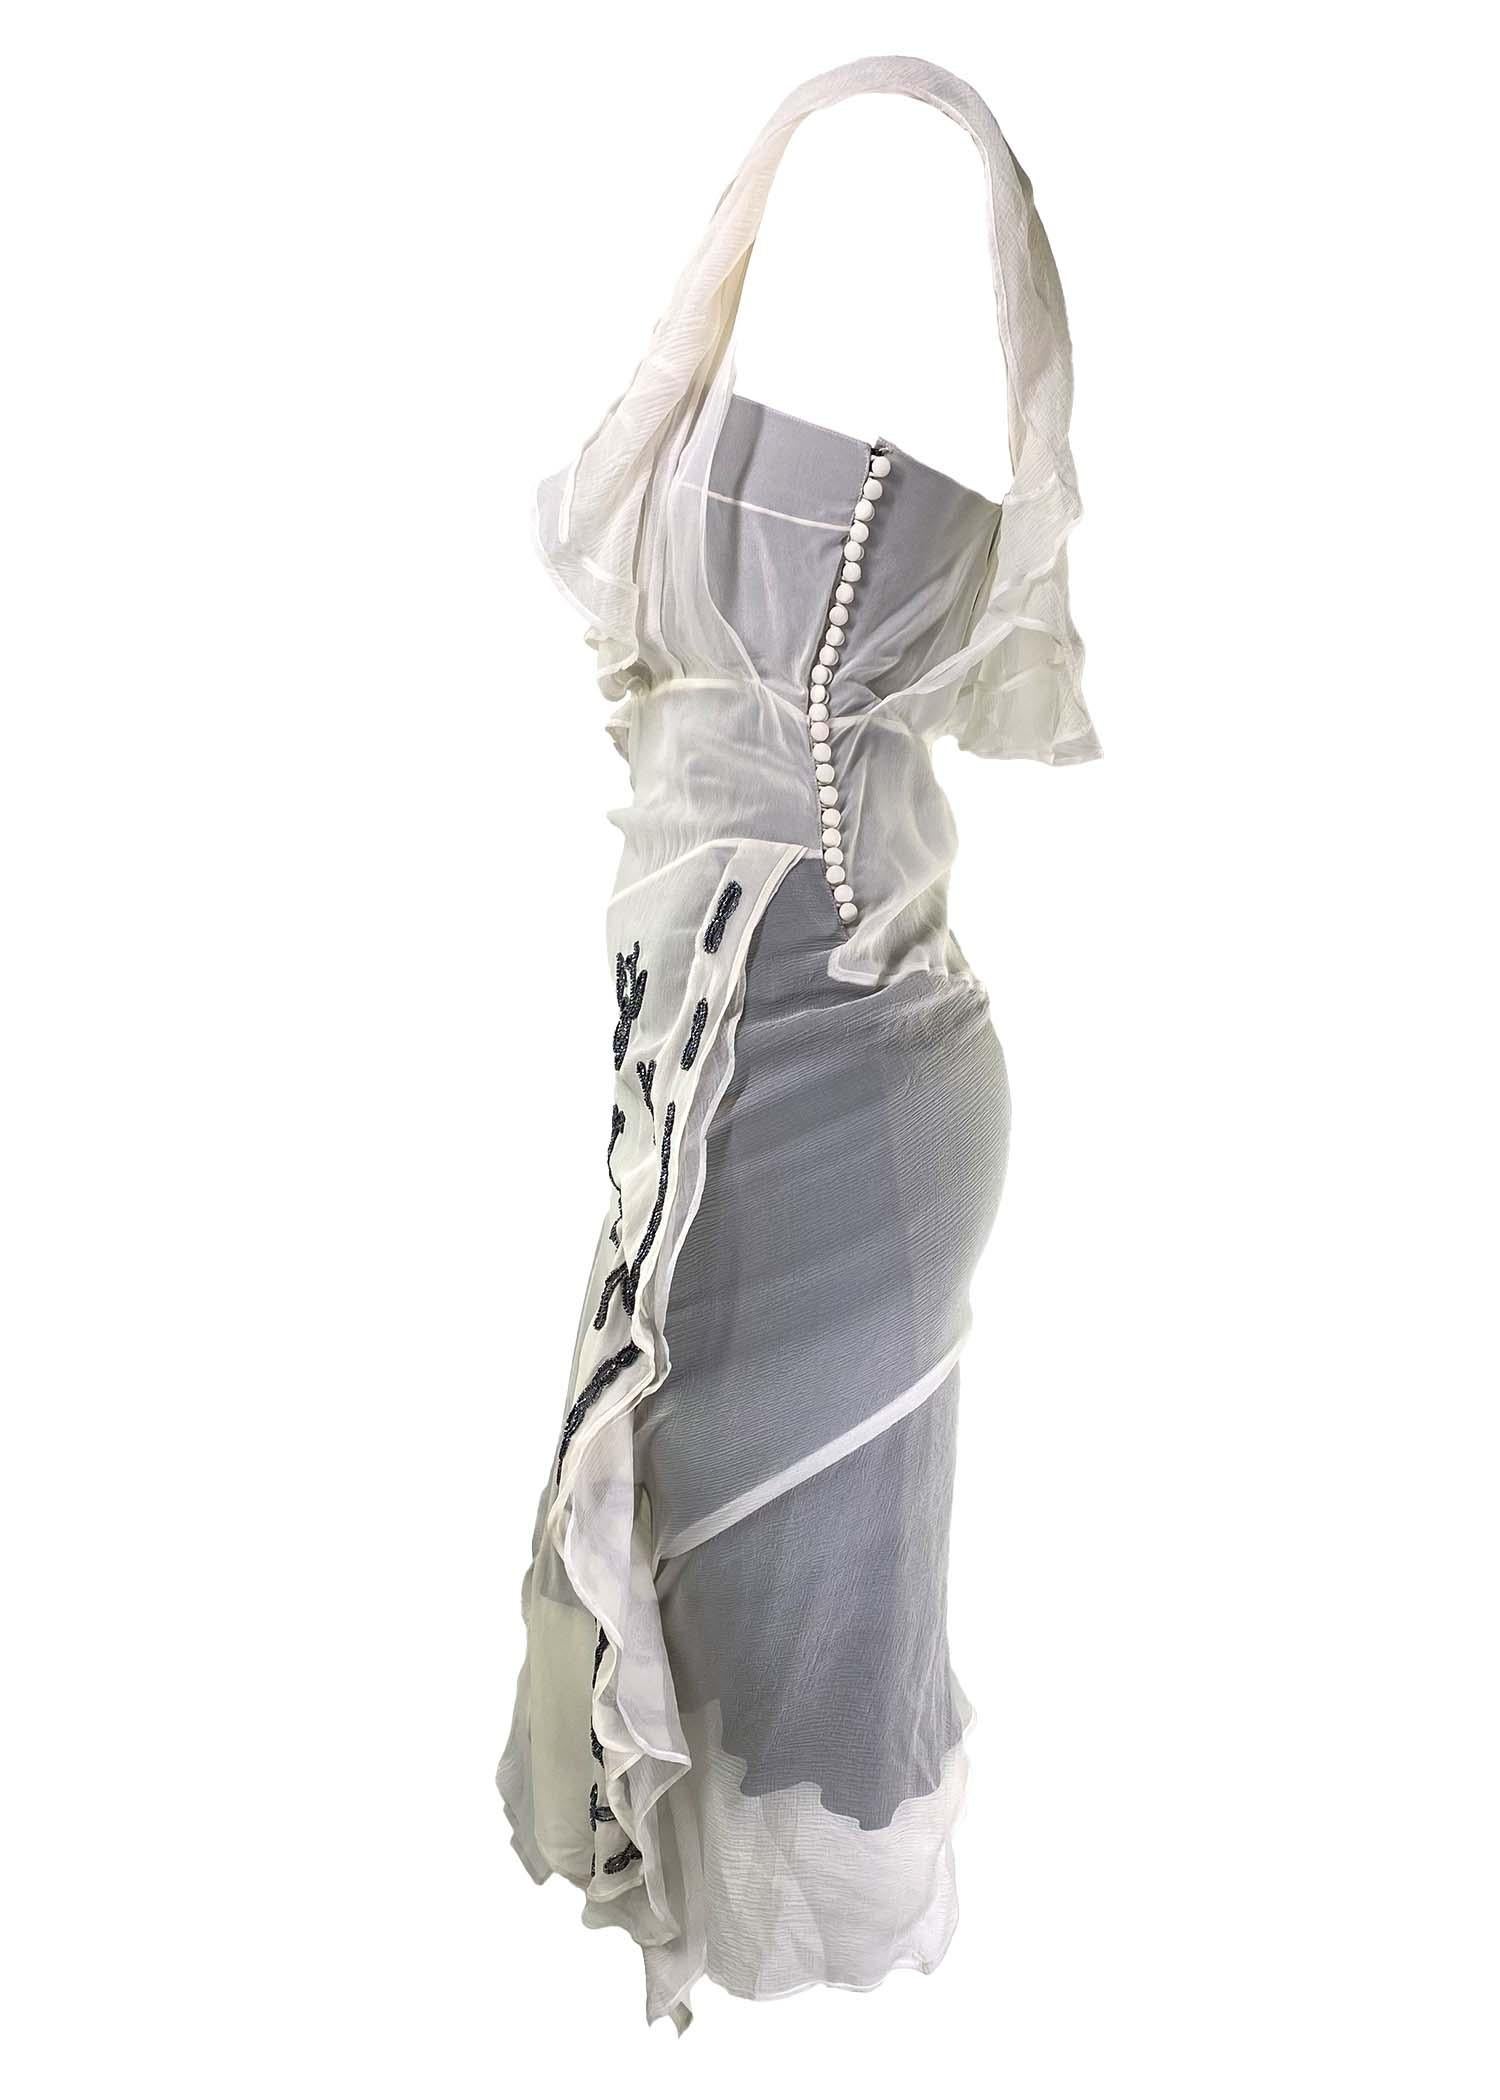 Voici une superbe robe en mousseline de soie avec un motif floral perlé, conçue par John Galliano. Cette robe Dior a été créée pour la collection automne/hiver 2006. Composée d'un jupon sombre et d'une légère mousseline de soie fluide sur le dessus,